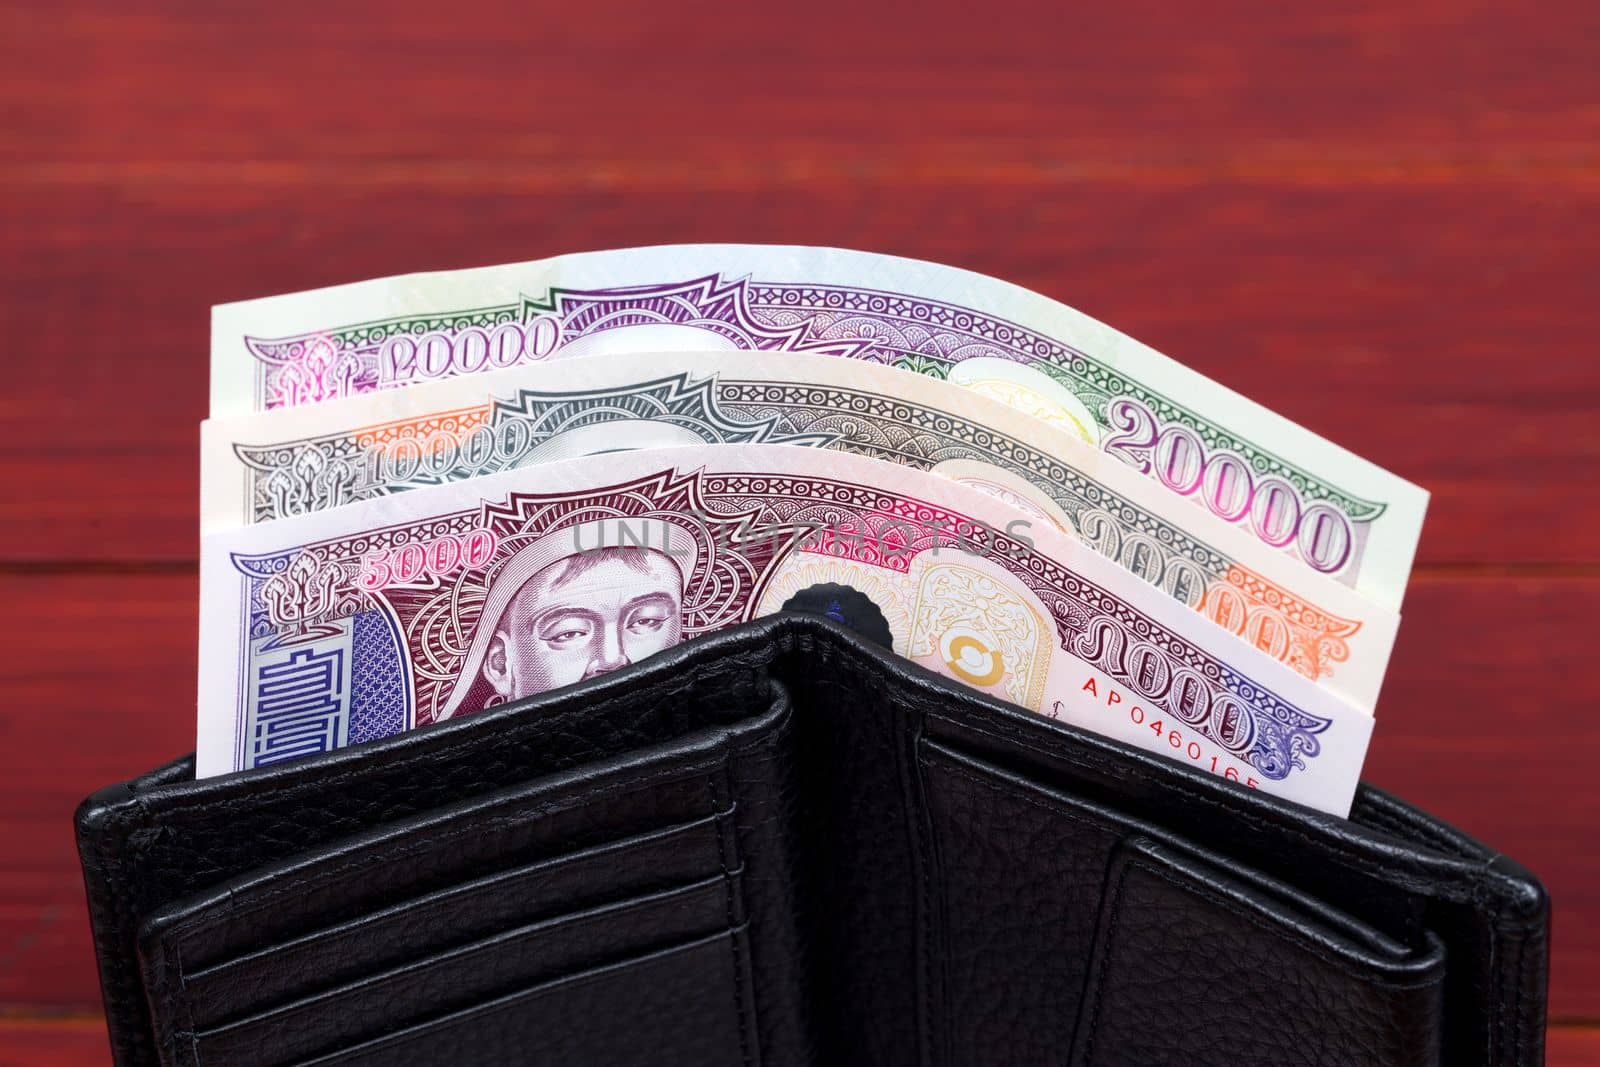 Mongolian money - Tugrik in the black wallet